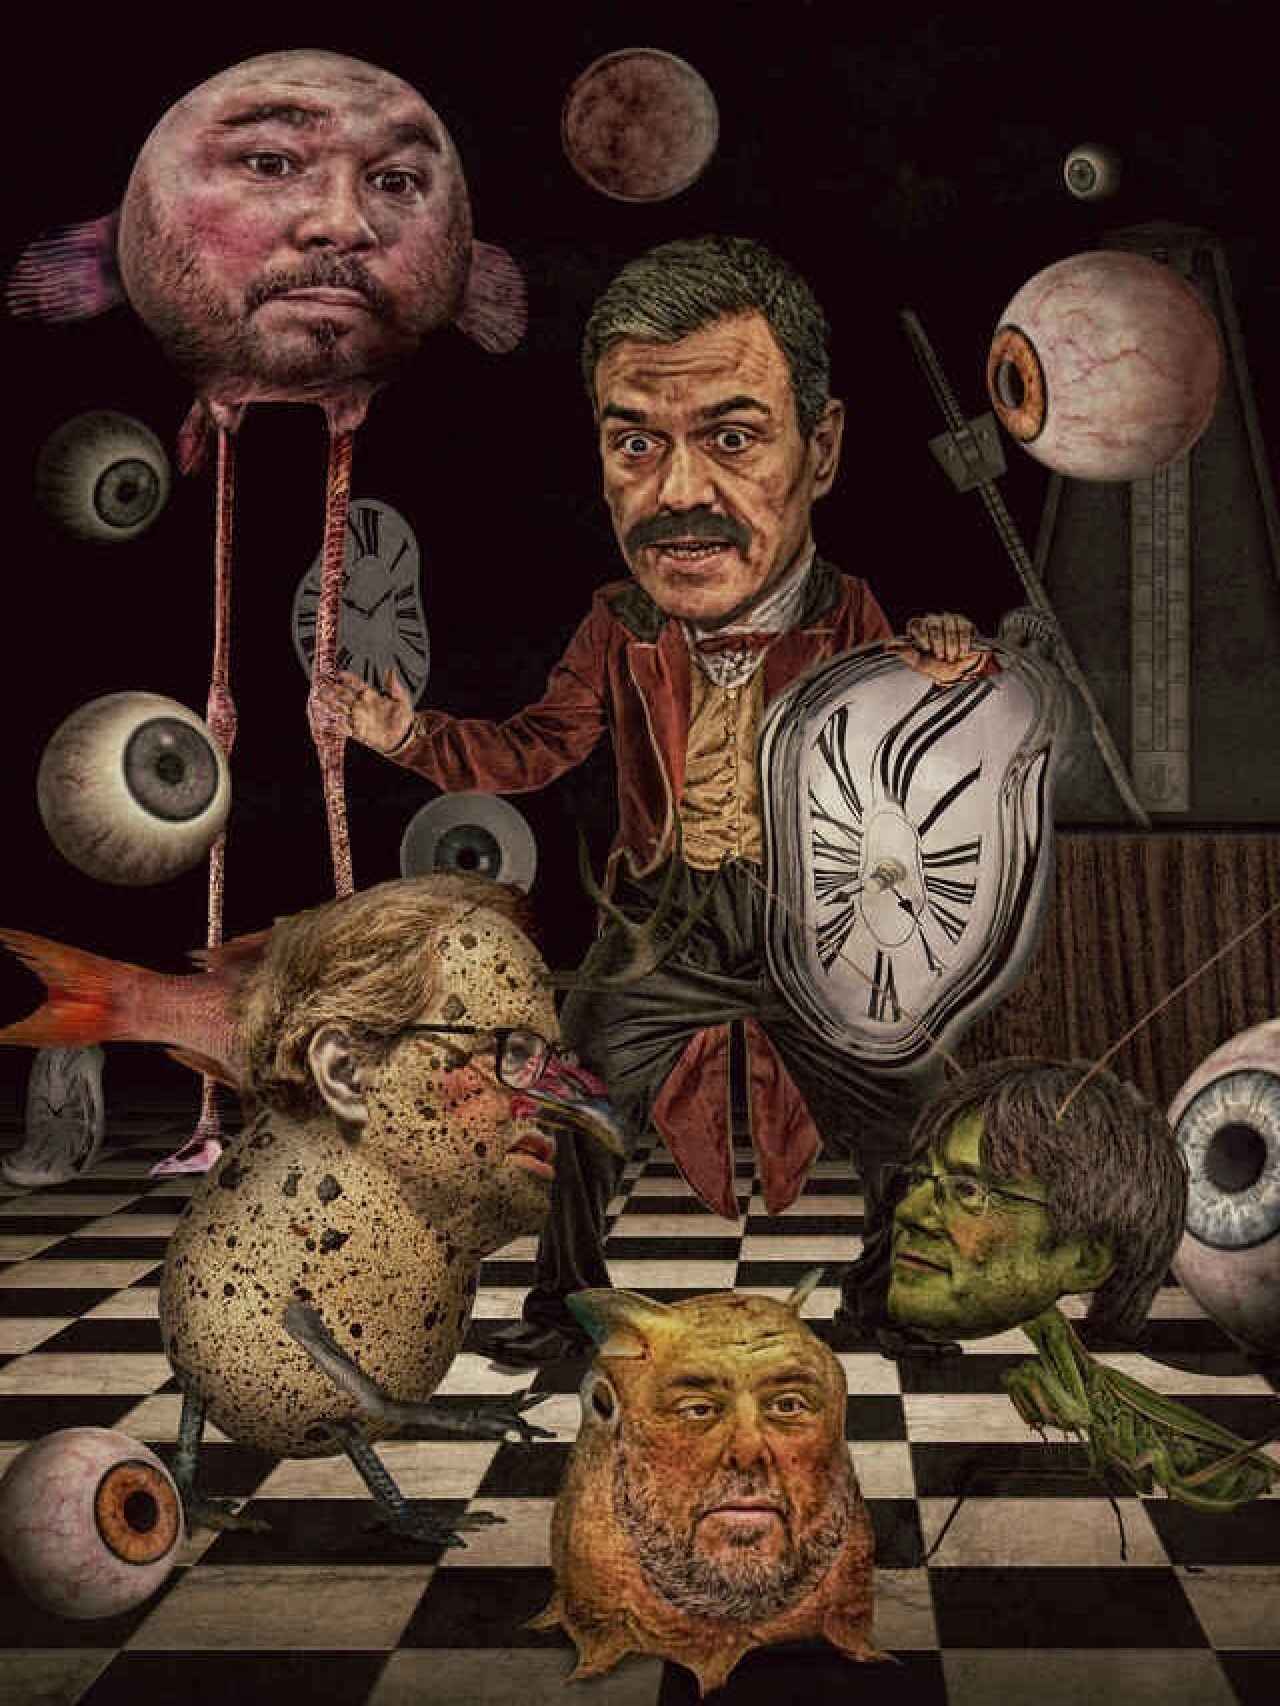 Ilustración de Javier Muñoz publicada en 2020 para el artículo de Pedro J. Ramírez 'El domador sin látigo'.